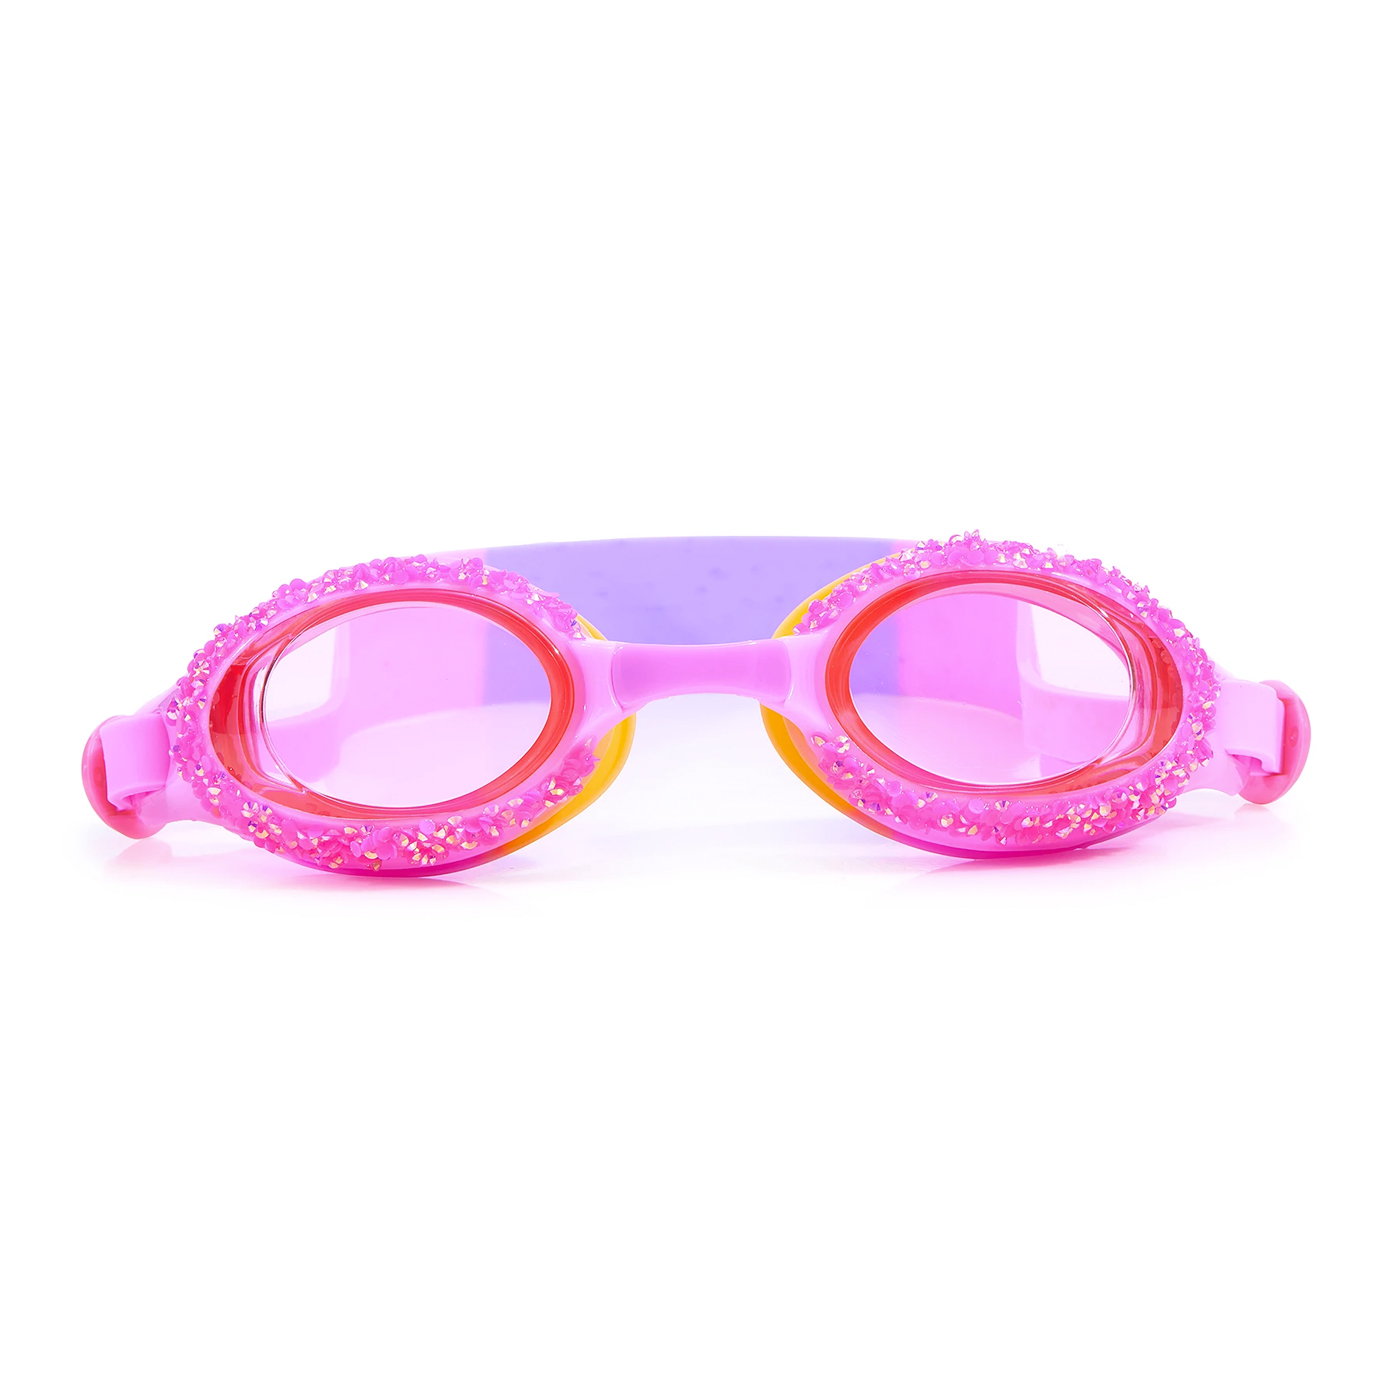  Bling2o Rock Candy Deniz Gözlüğü  | Crystal Rock Pink